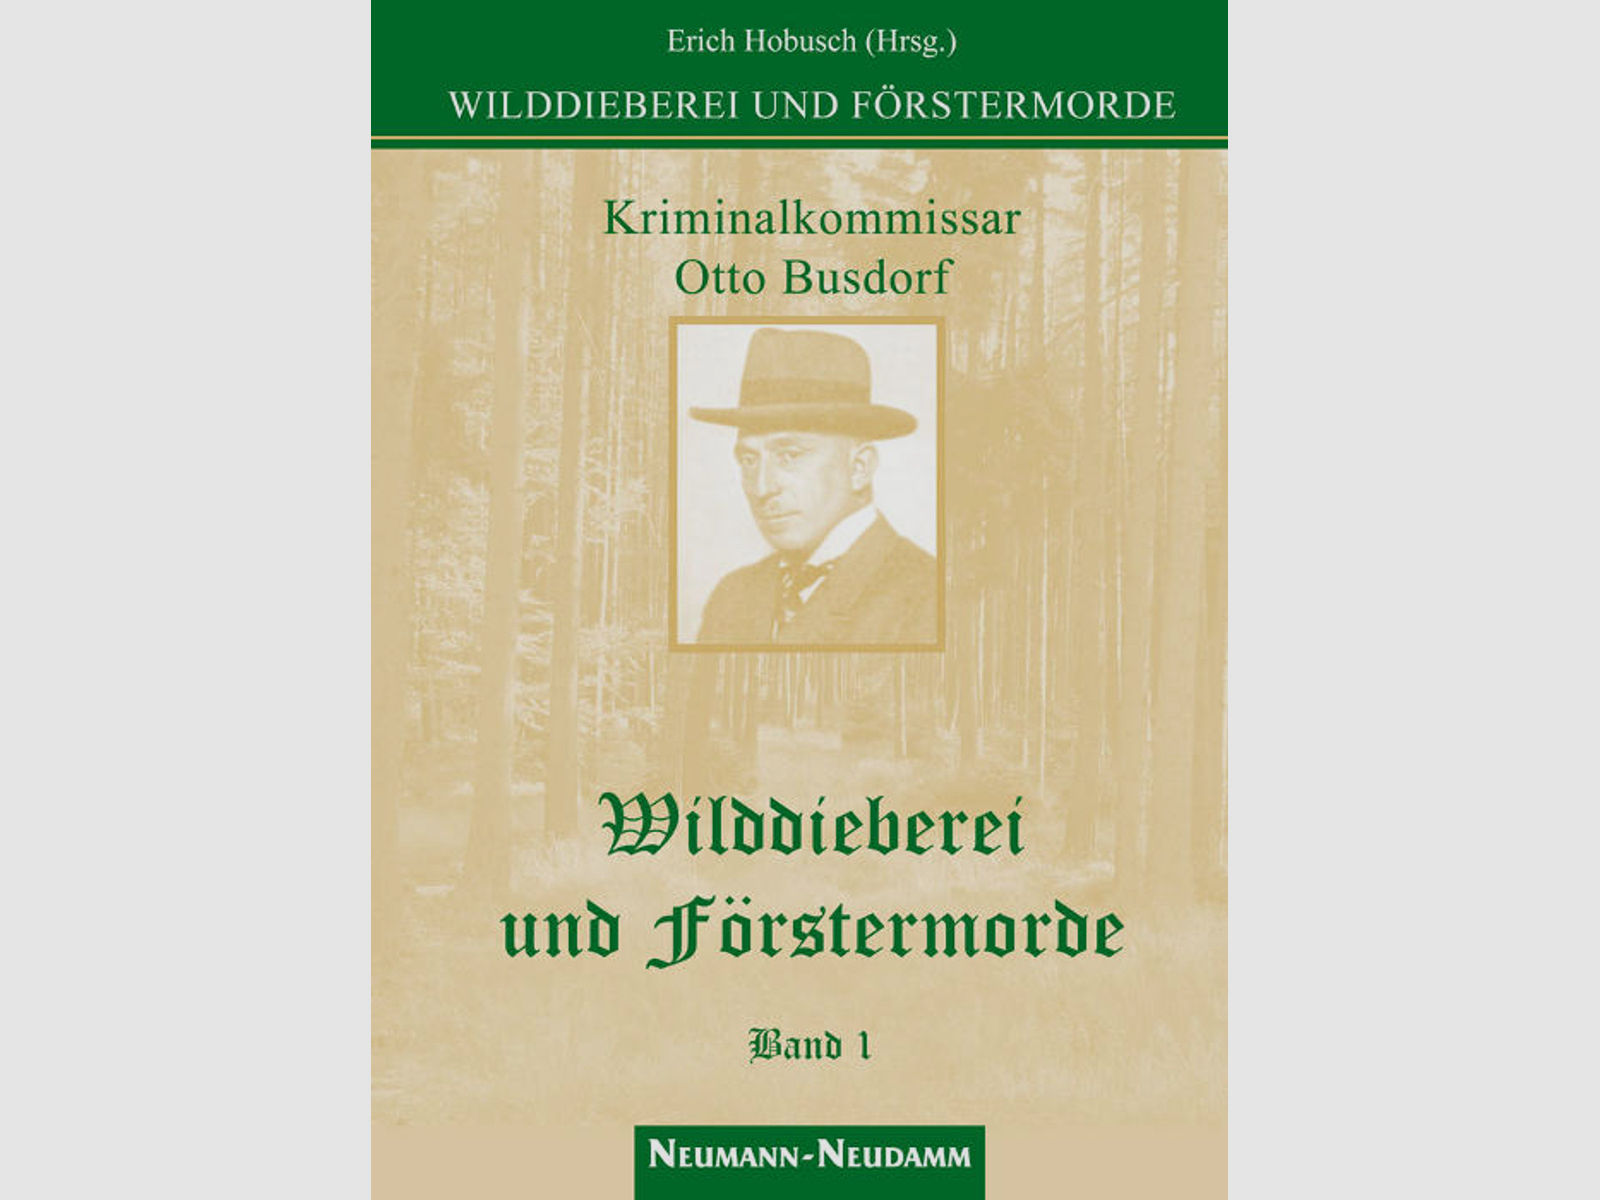 Hobusch (Hrsg.), Wilddieberei und Förstermorde Band 1